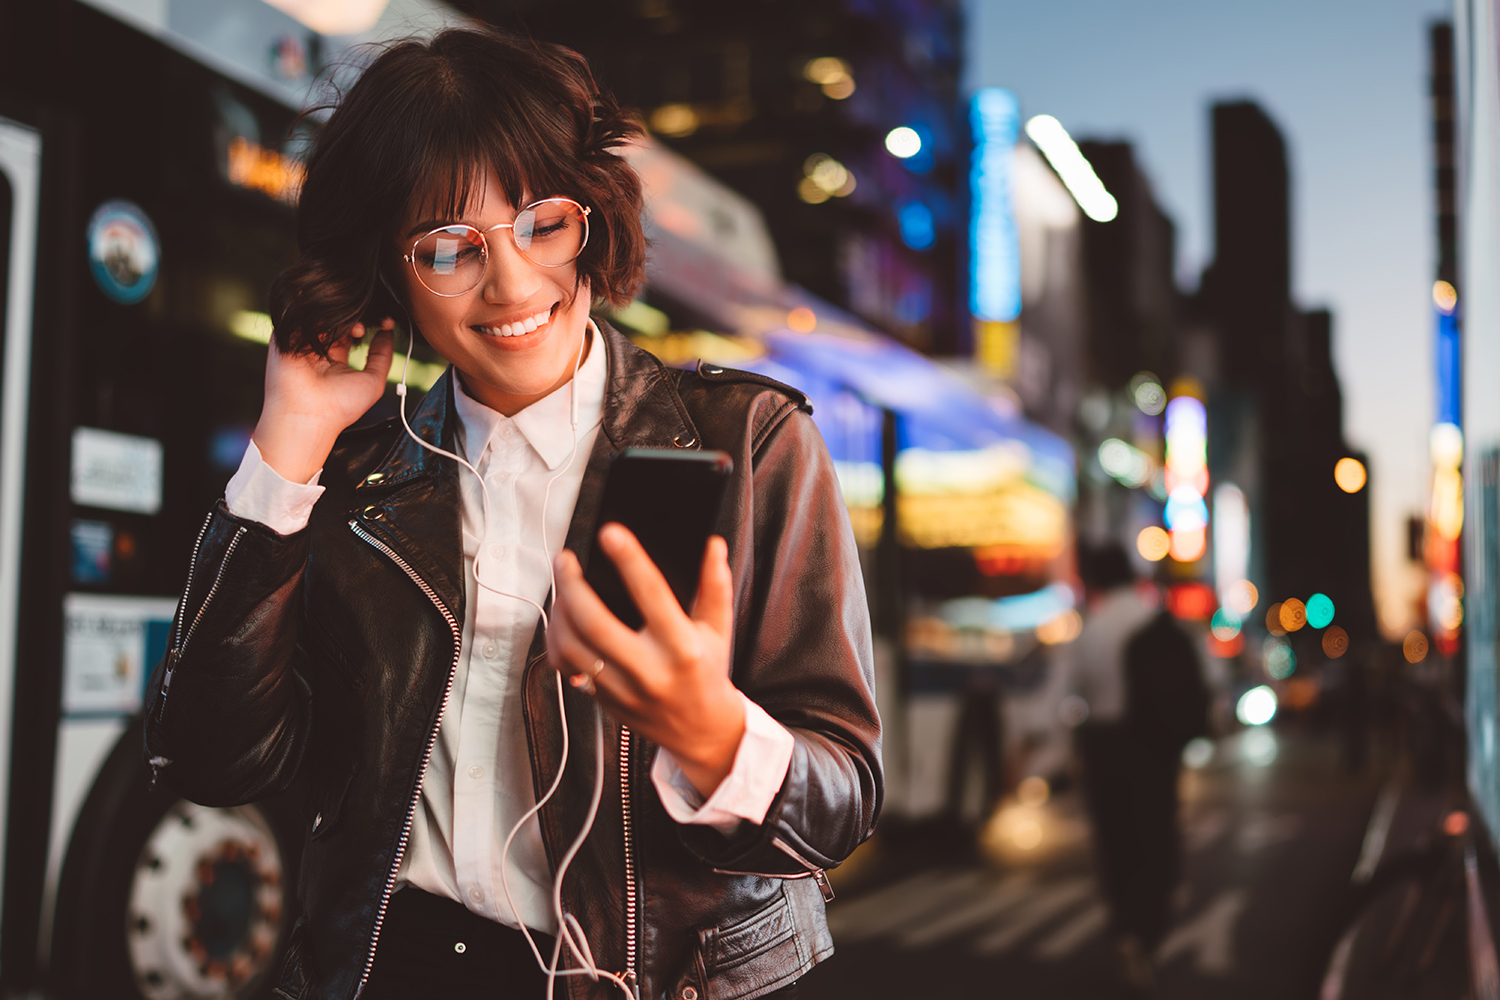 Iloinen silmälasipäinen nainen kuuntelee musiikkia kuulokkeilla kännykästä kävellessään kaupungin valaistussa keskustassa.